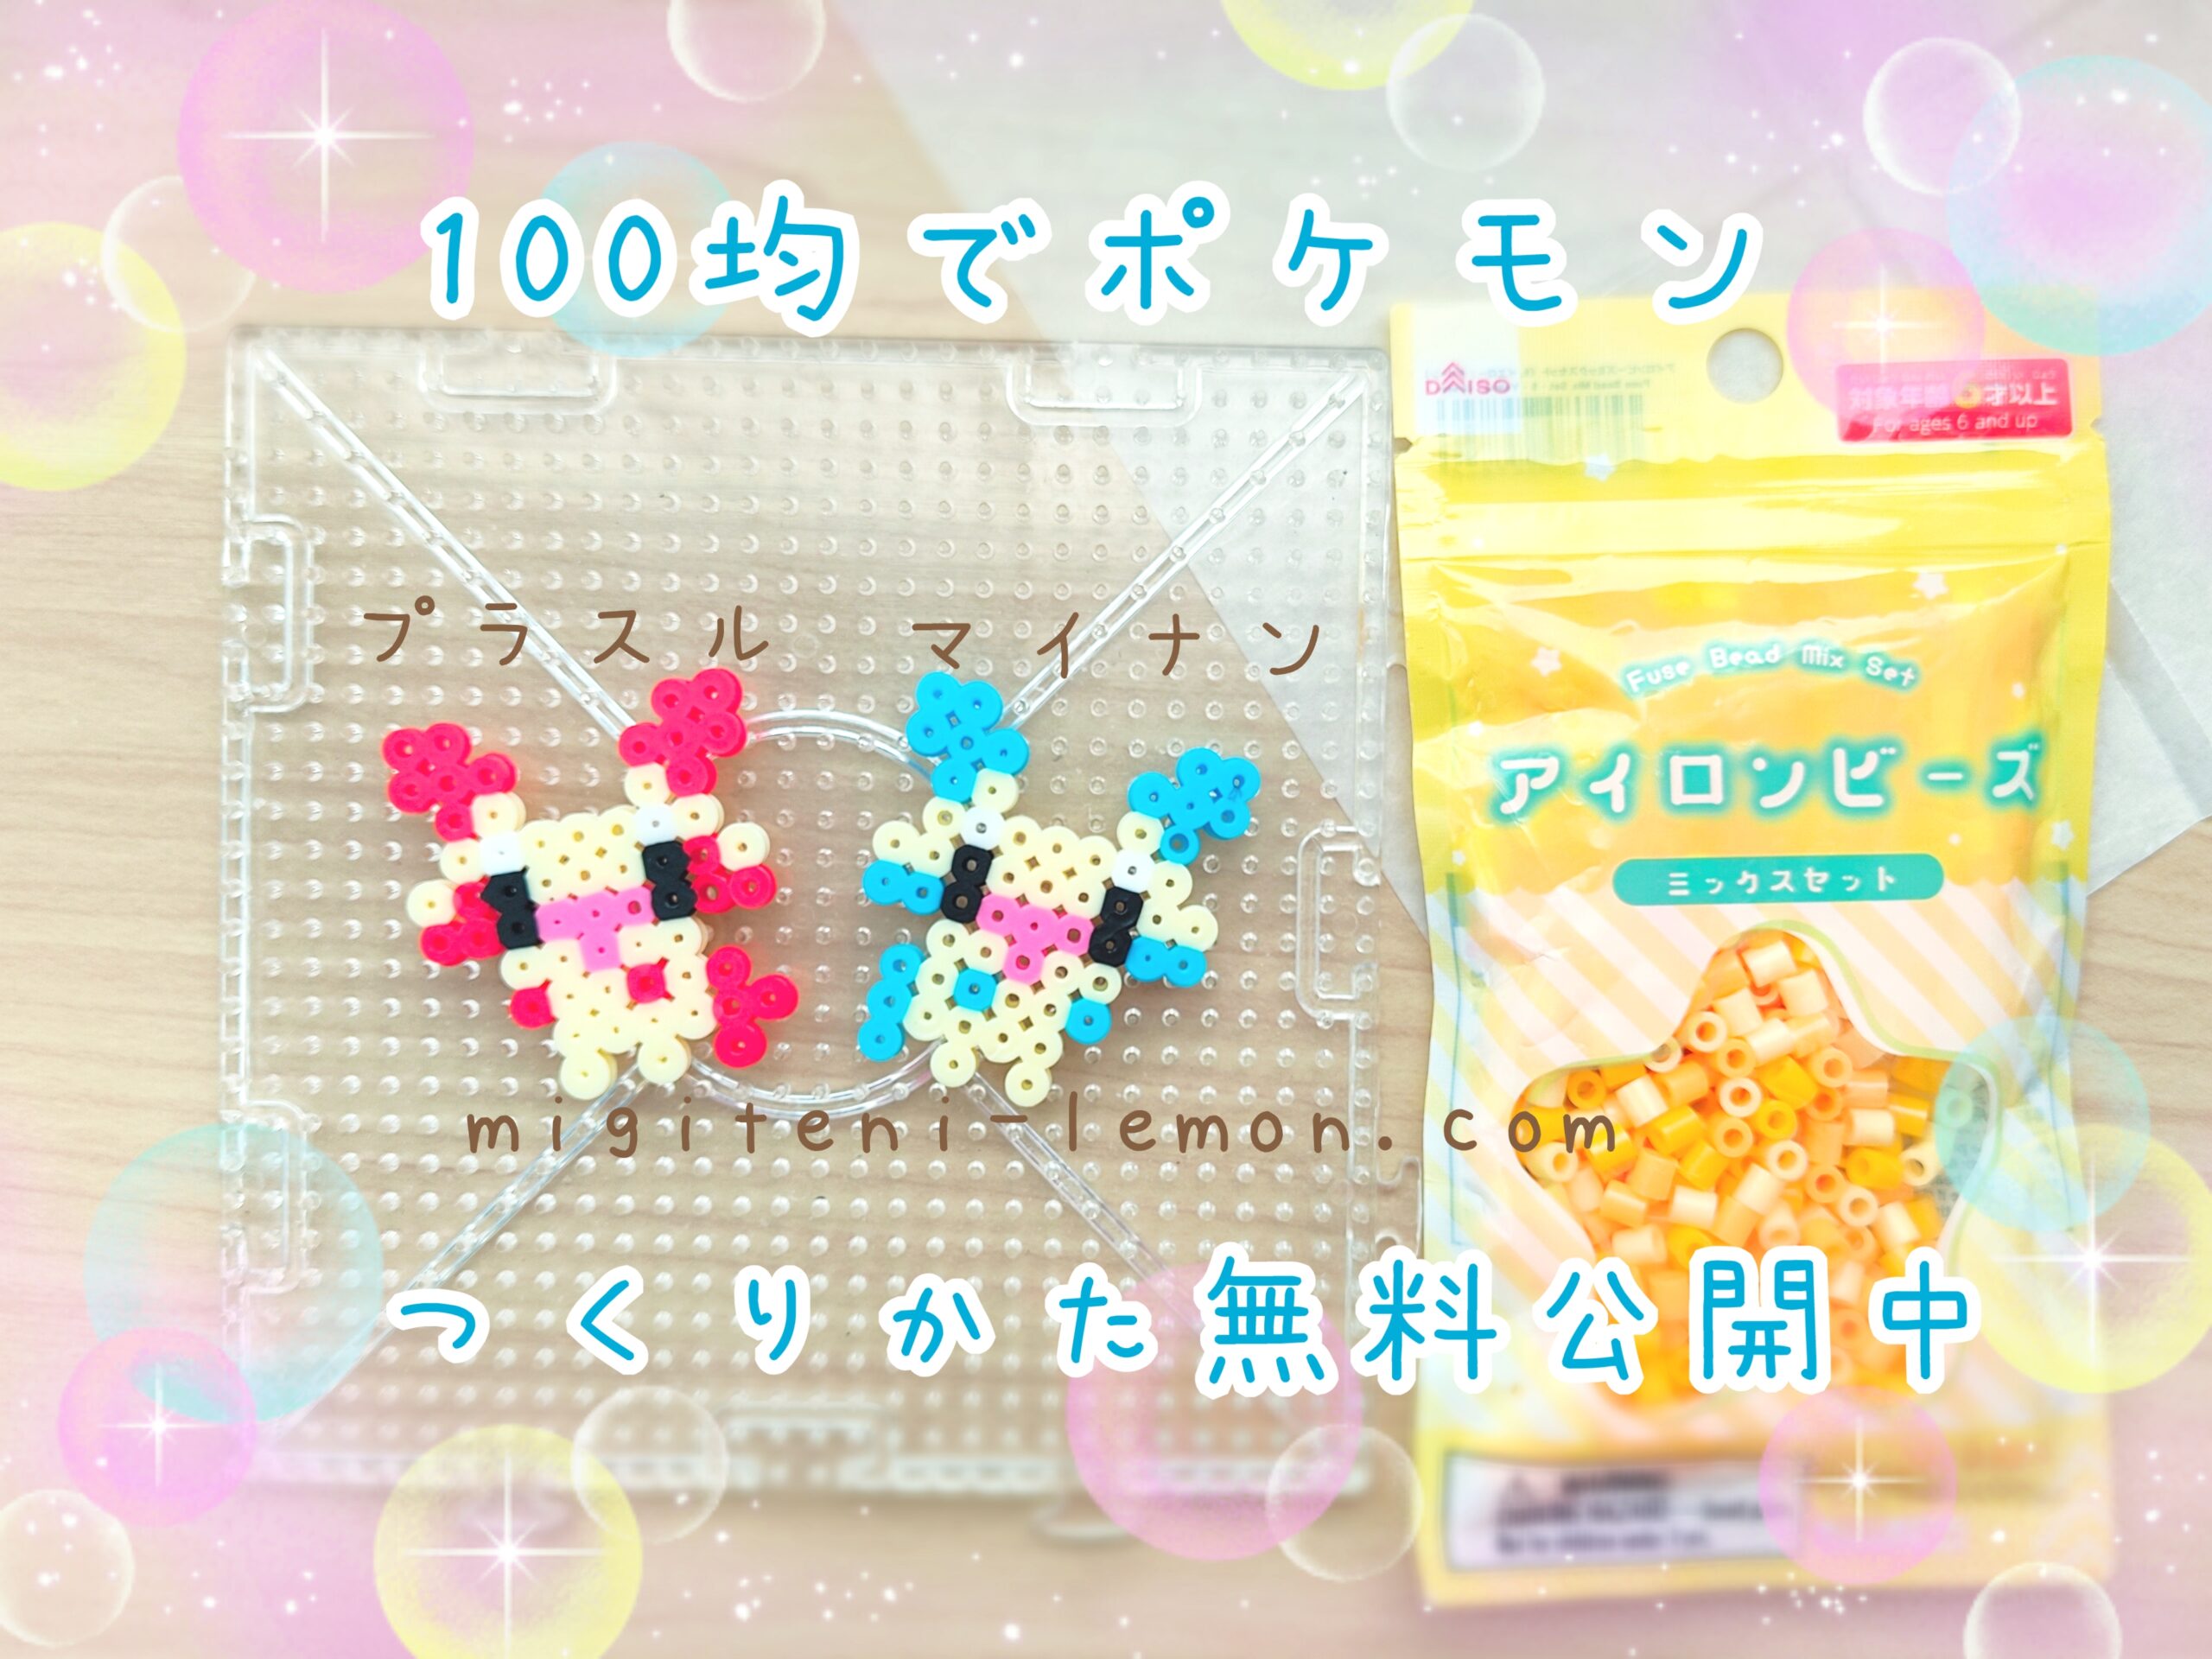 prasle-plusle-minun-kawaii-pokemon-beads-zuan